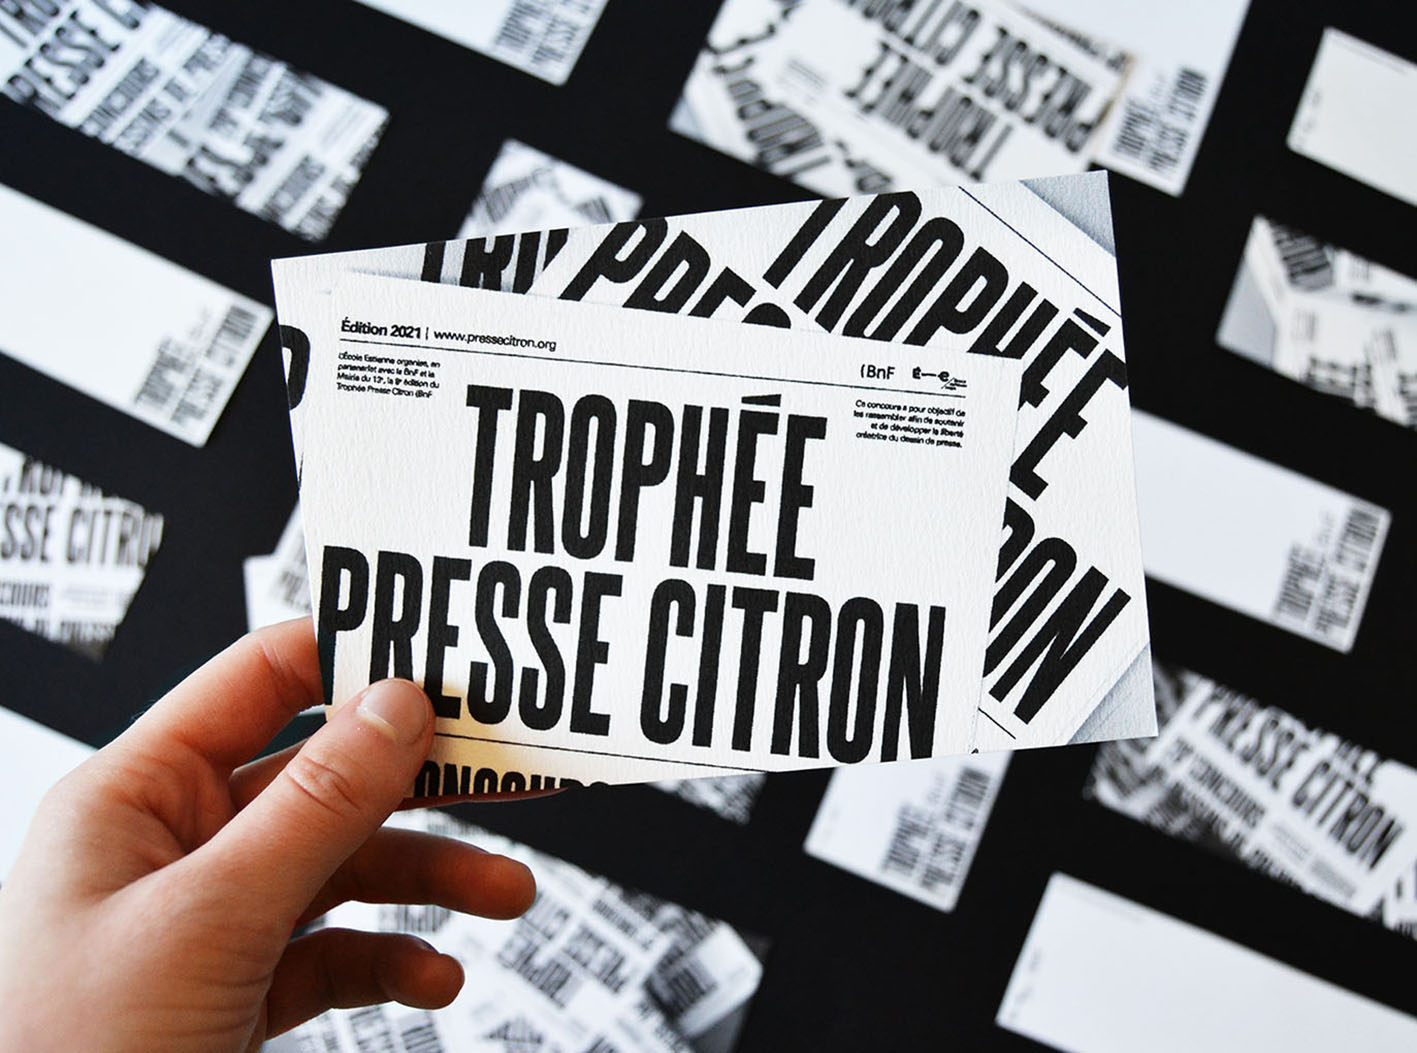 Trophée Presse Citron